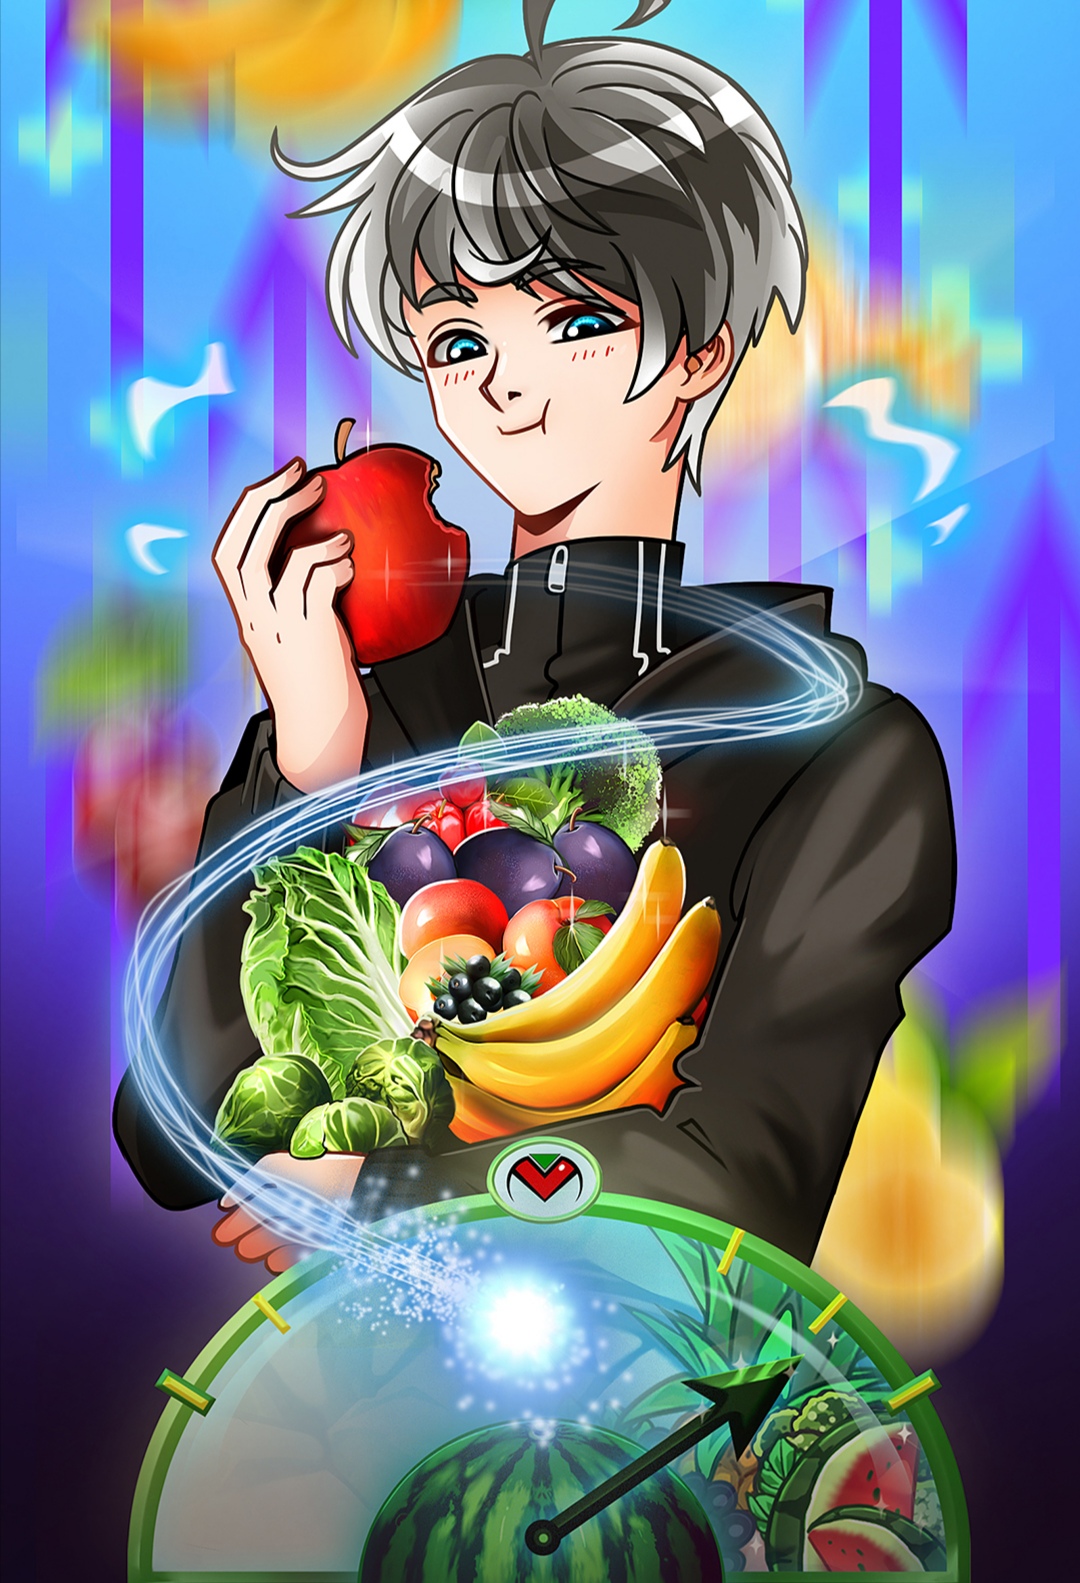 Ragazzo felice,mangia una mela,tiene in mano frutta e verdura,Vital Monster